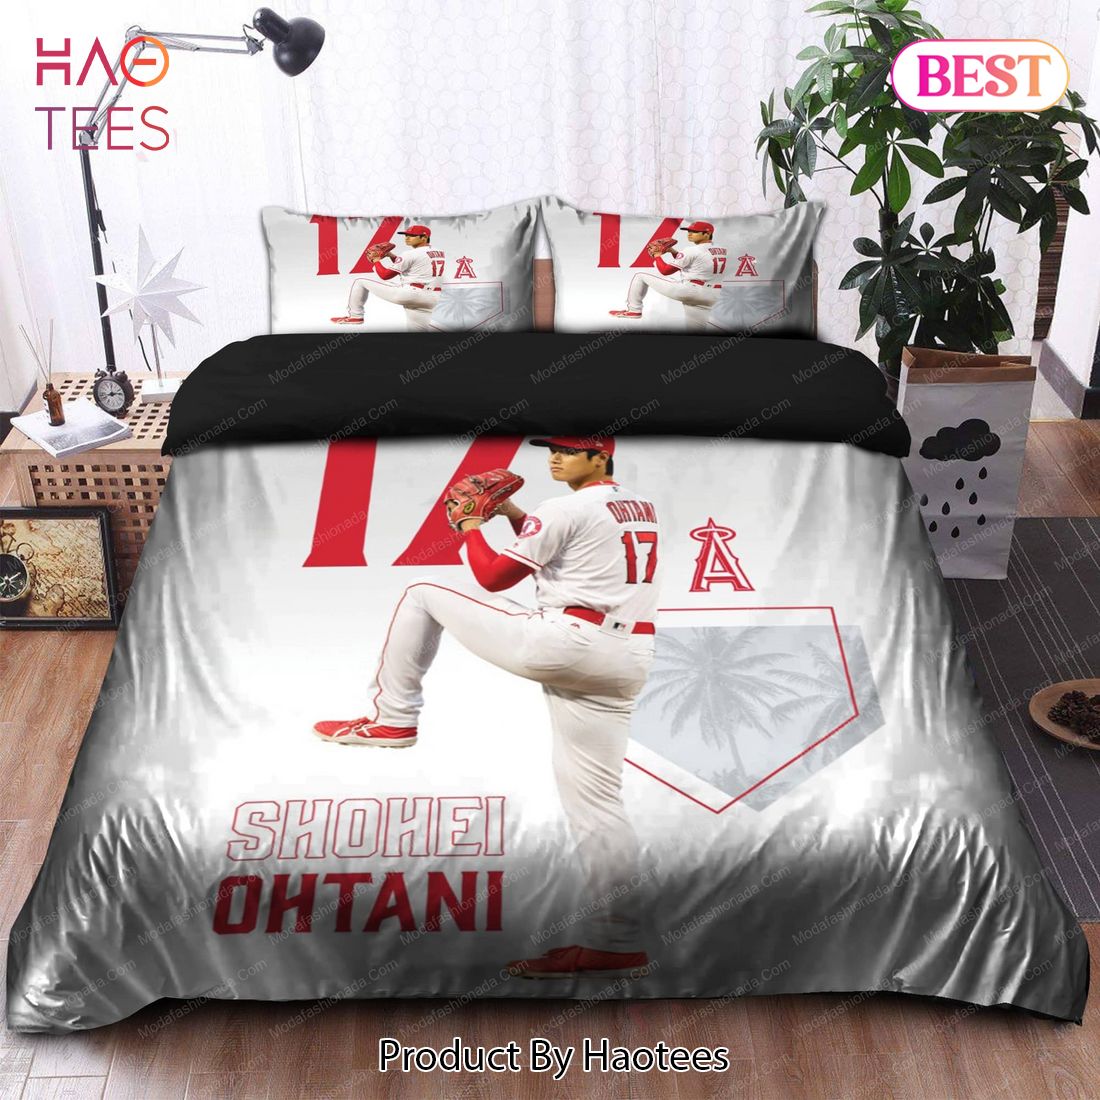 Buy Japanese Shohei Ohtani Los Angeles Angels MLB 24 Bedding Sets Bed Sets, Bedroom Sets, Comforter Sets, Duvet Cover, Bedspread